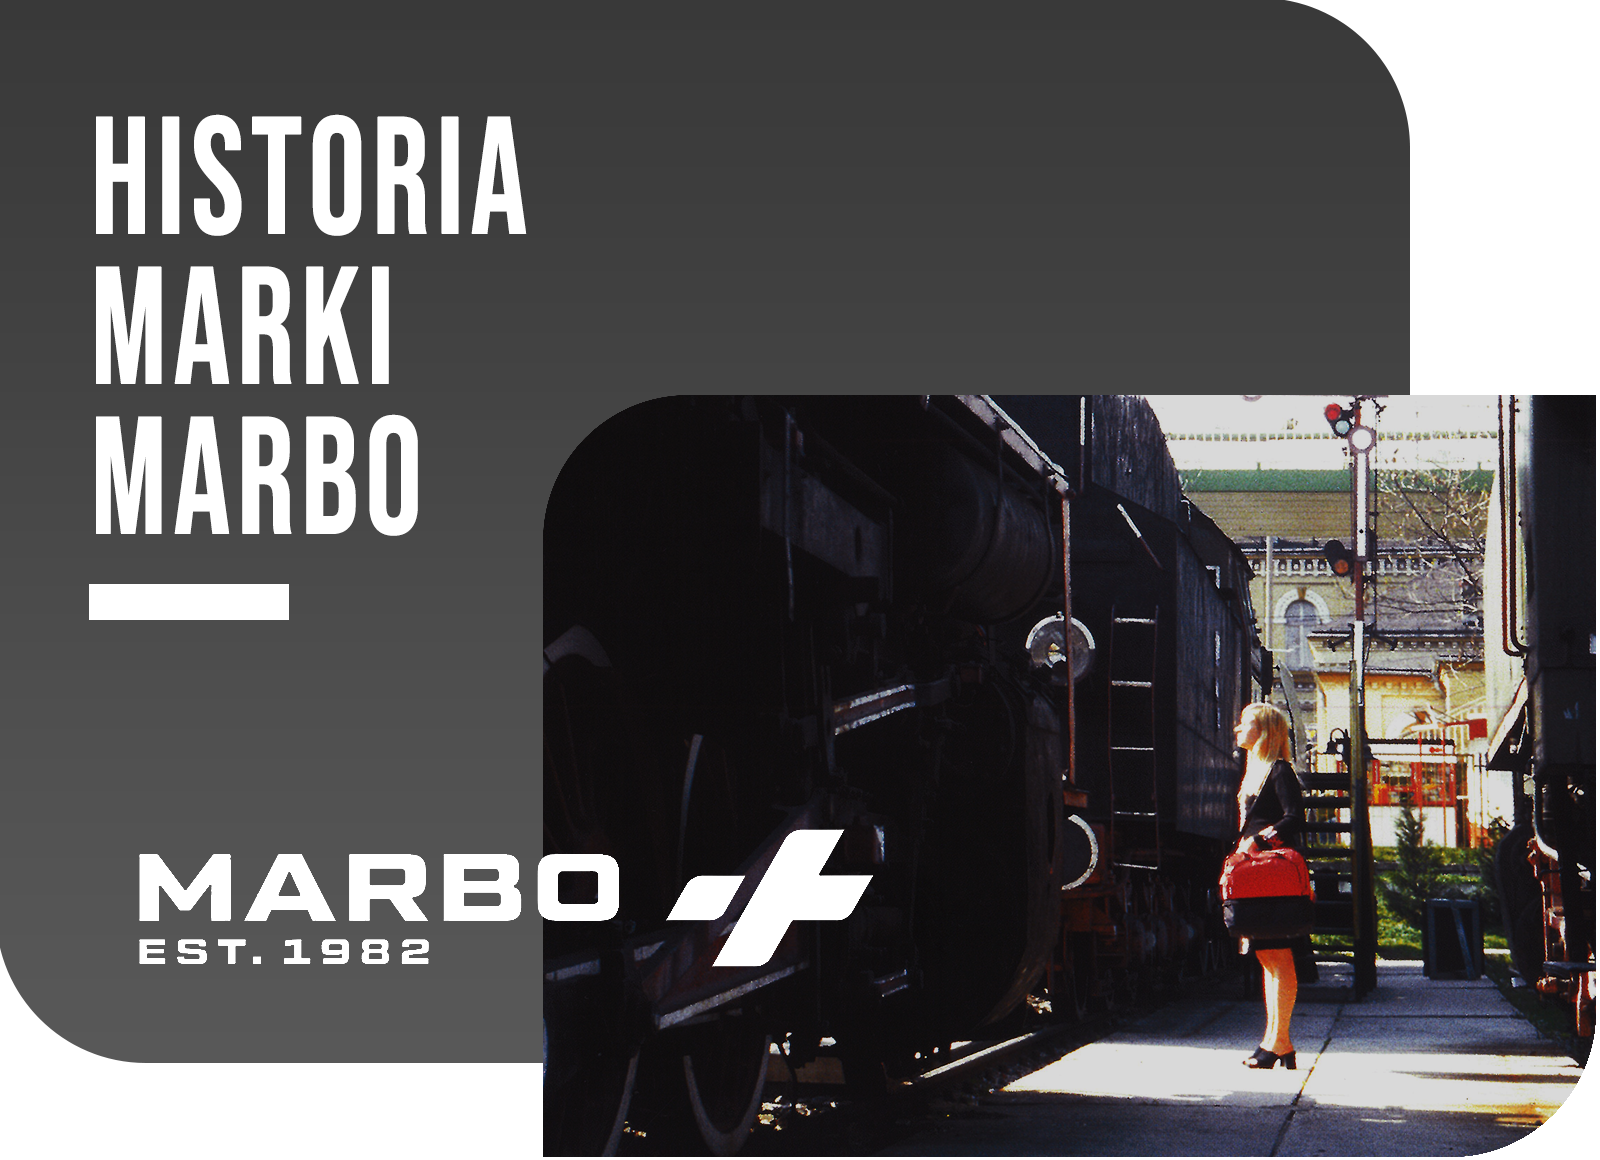 Historia marki Marbo